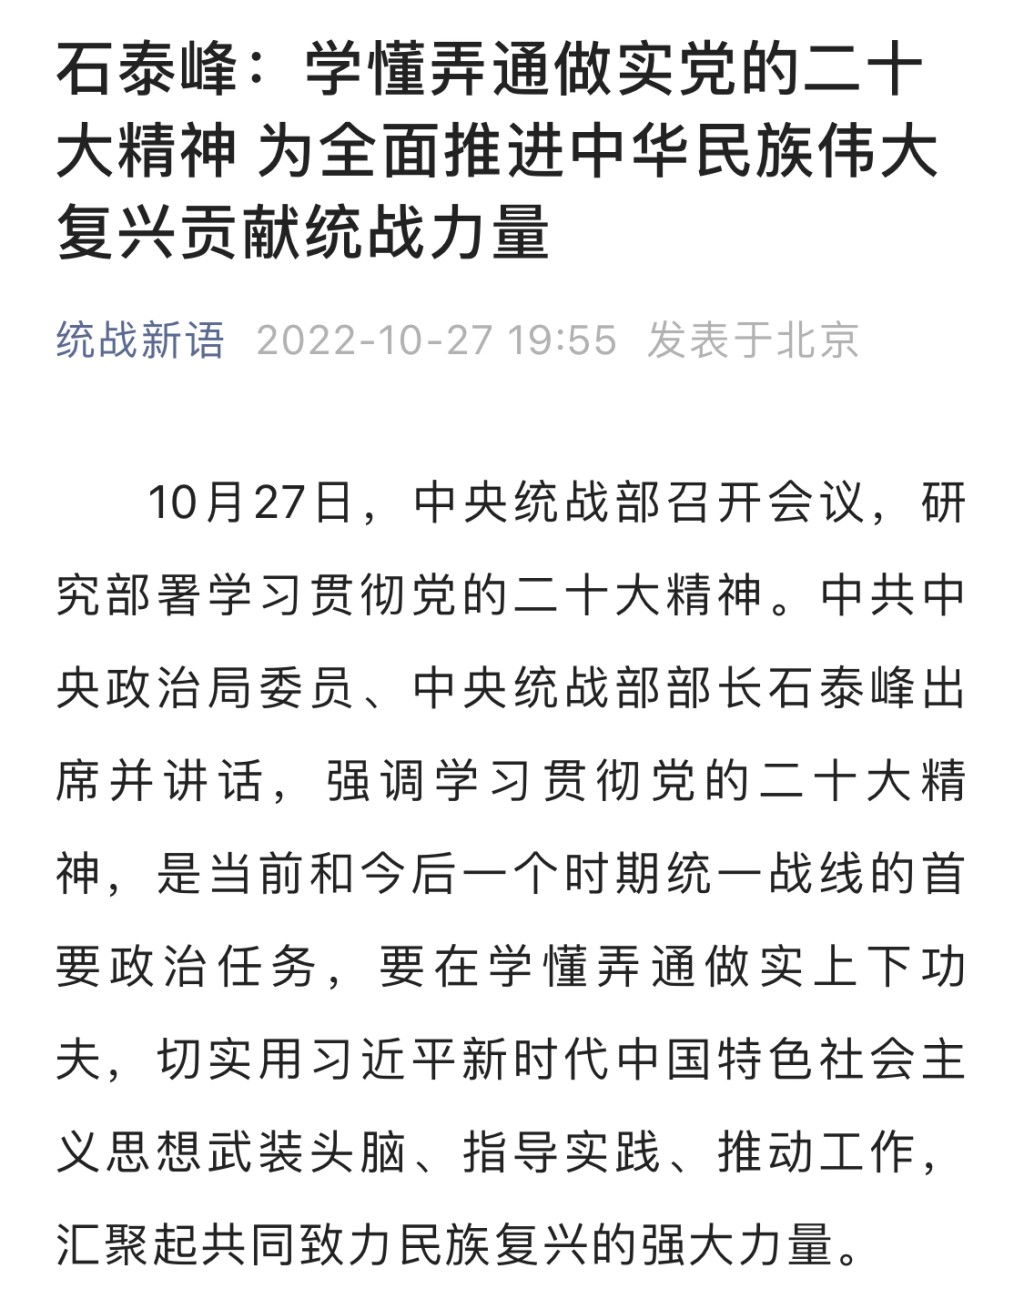 中央統戰部官方微信公眾號稱，石泰峰今天以中央統戰部部長身分公開亮相。互聯網